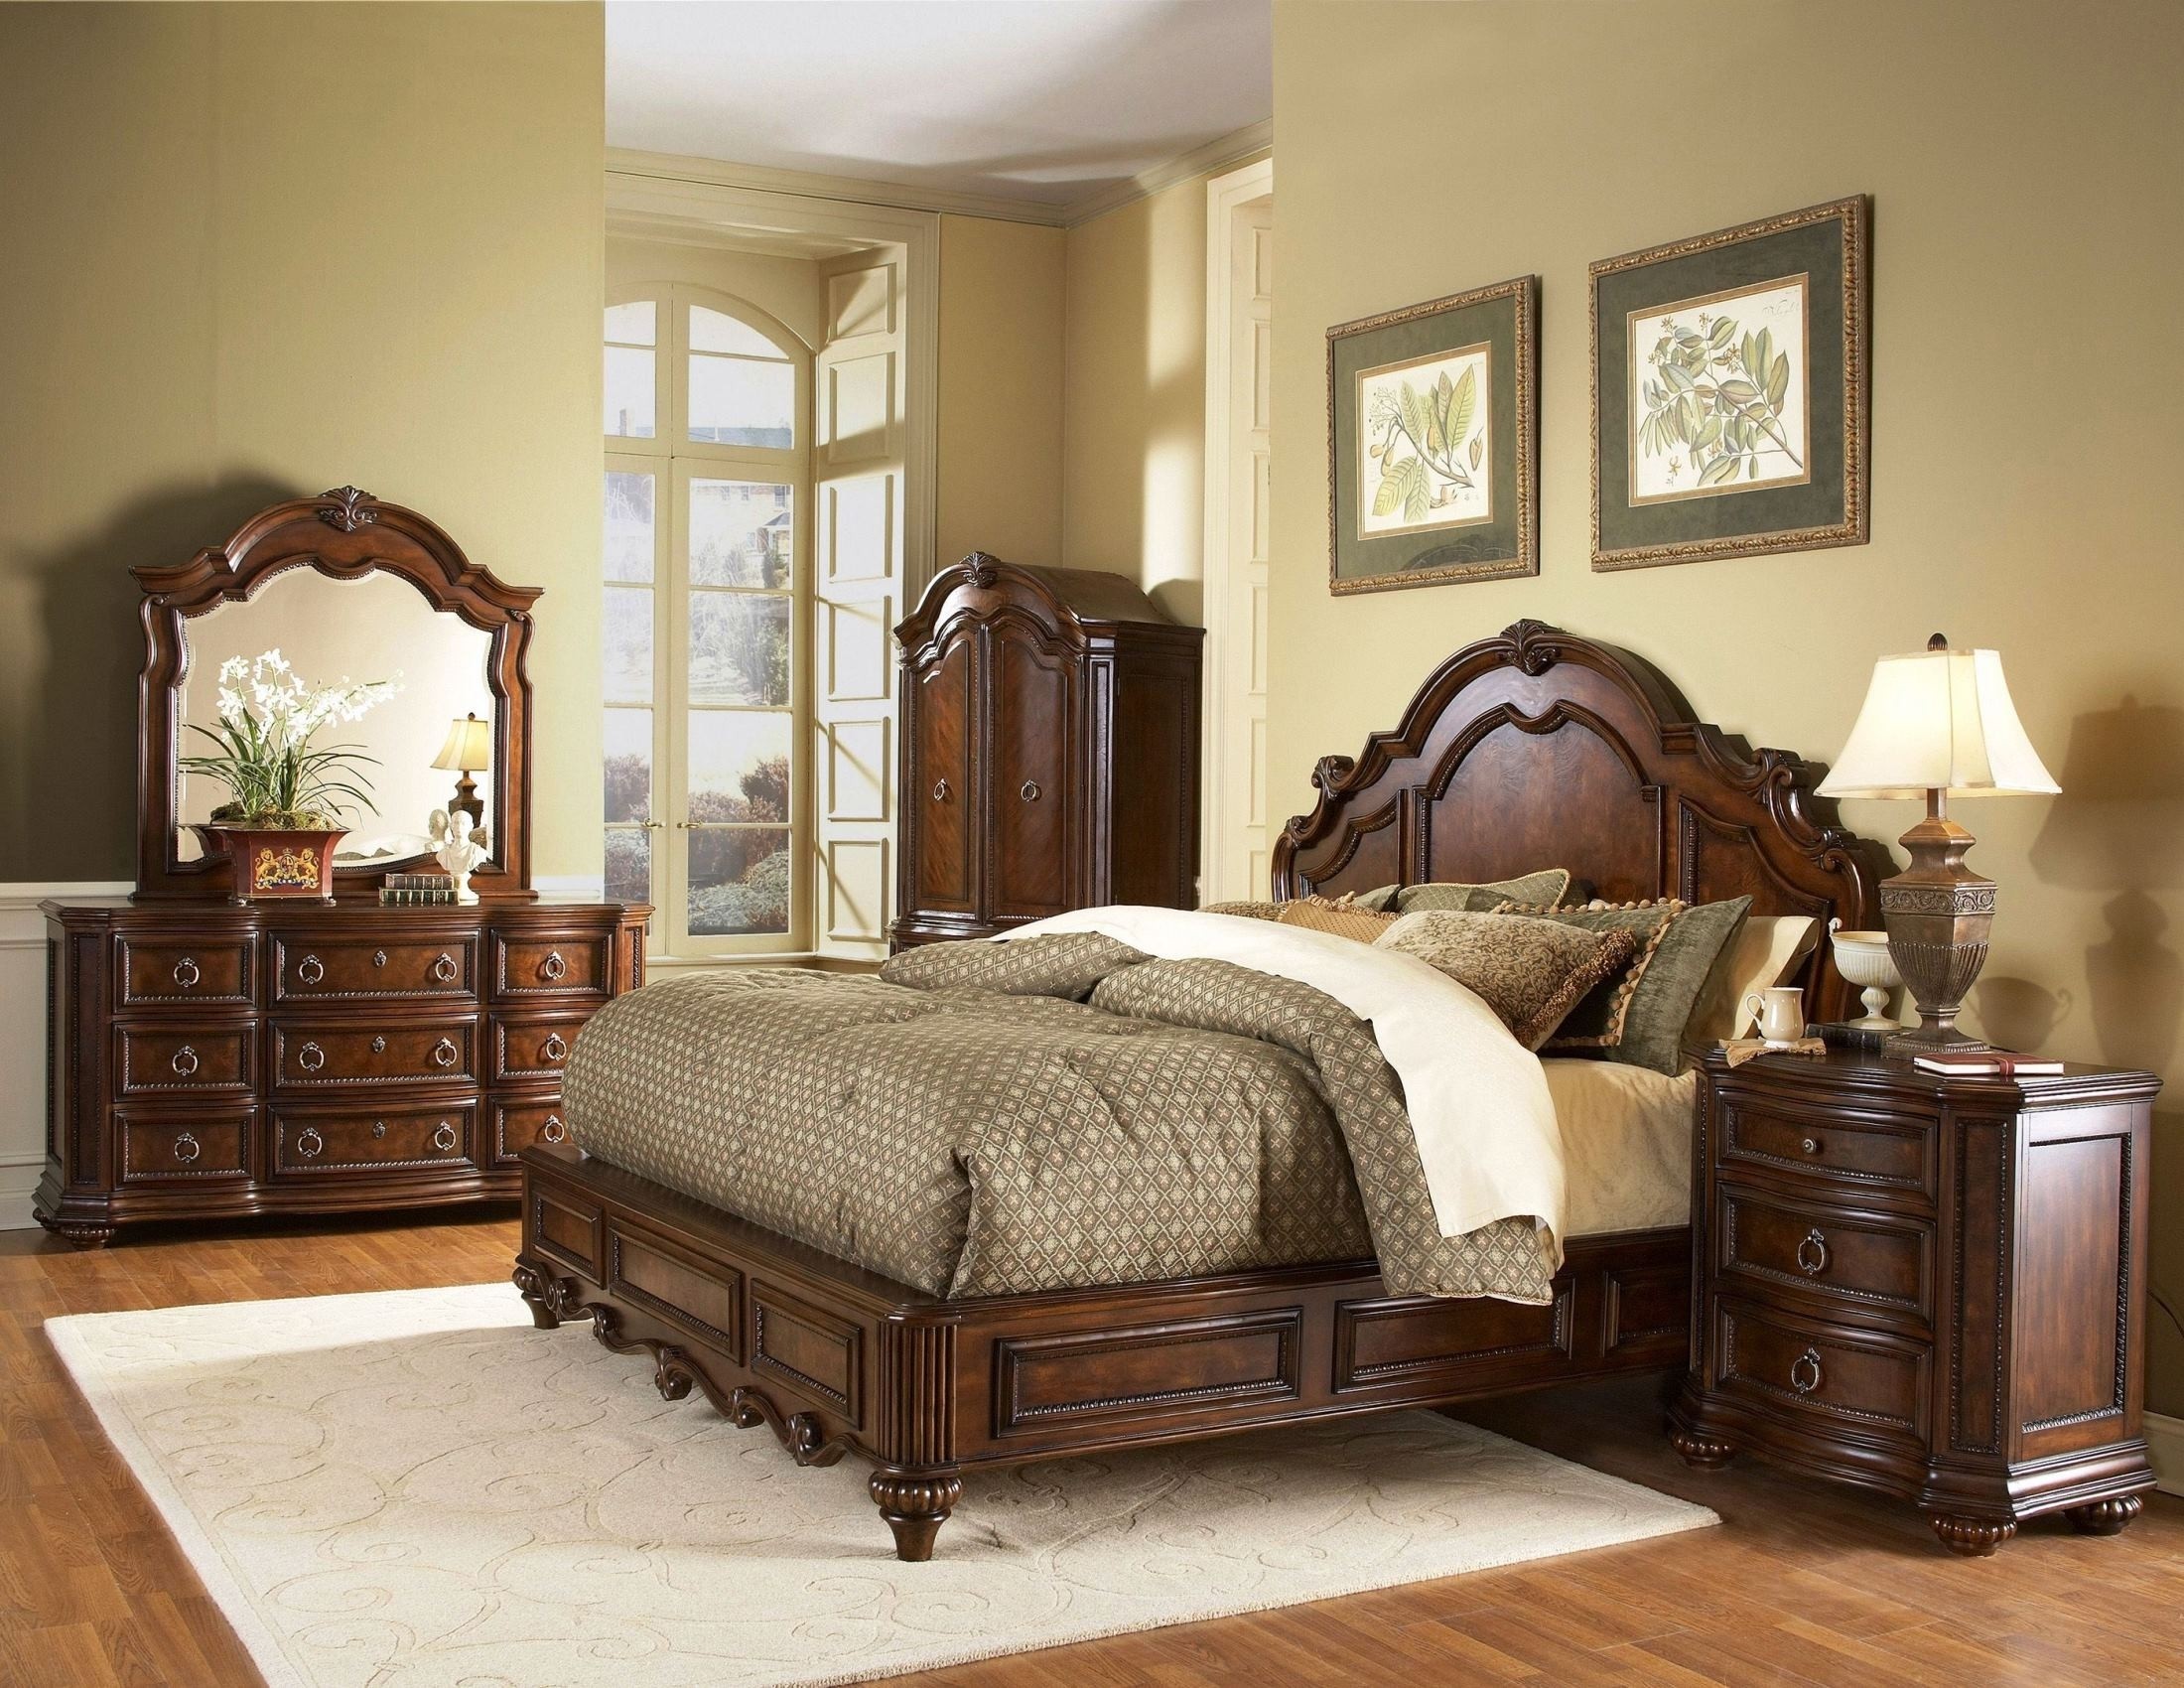 Mahogany bedroom furniture sets